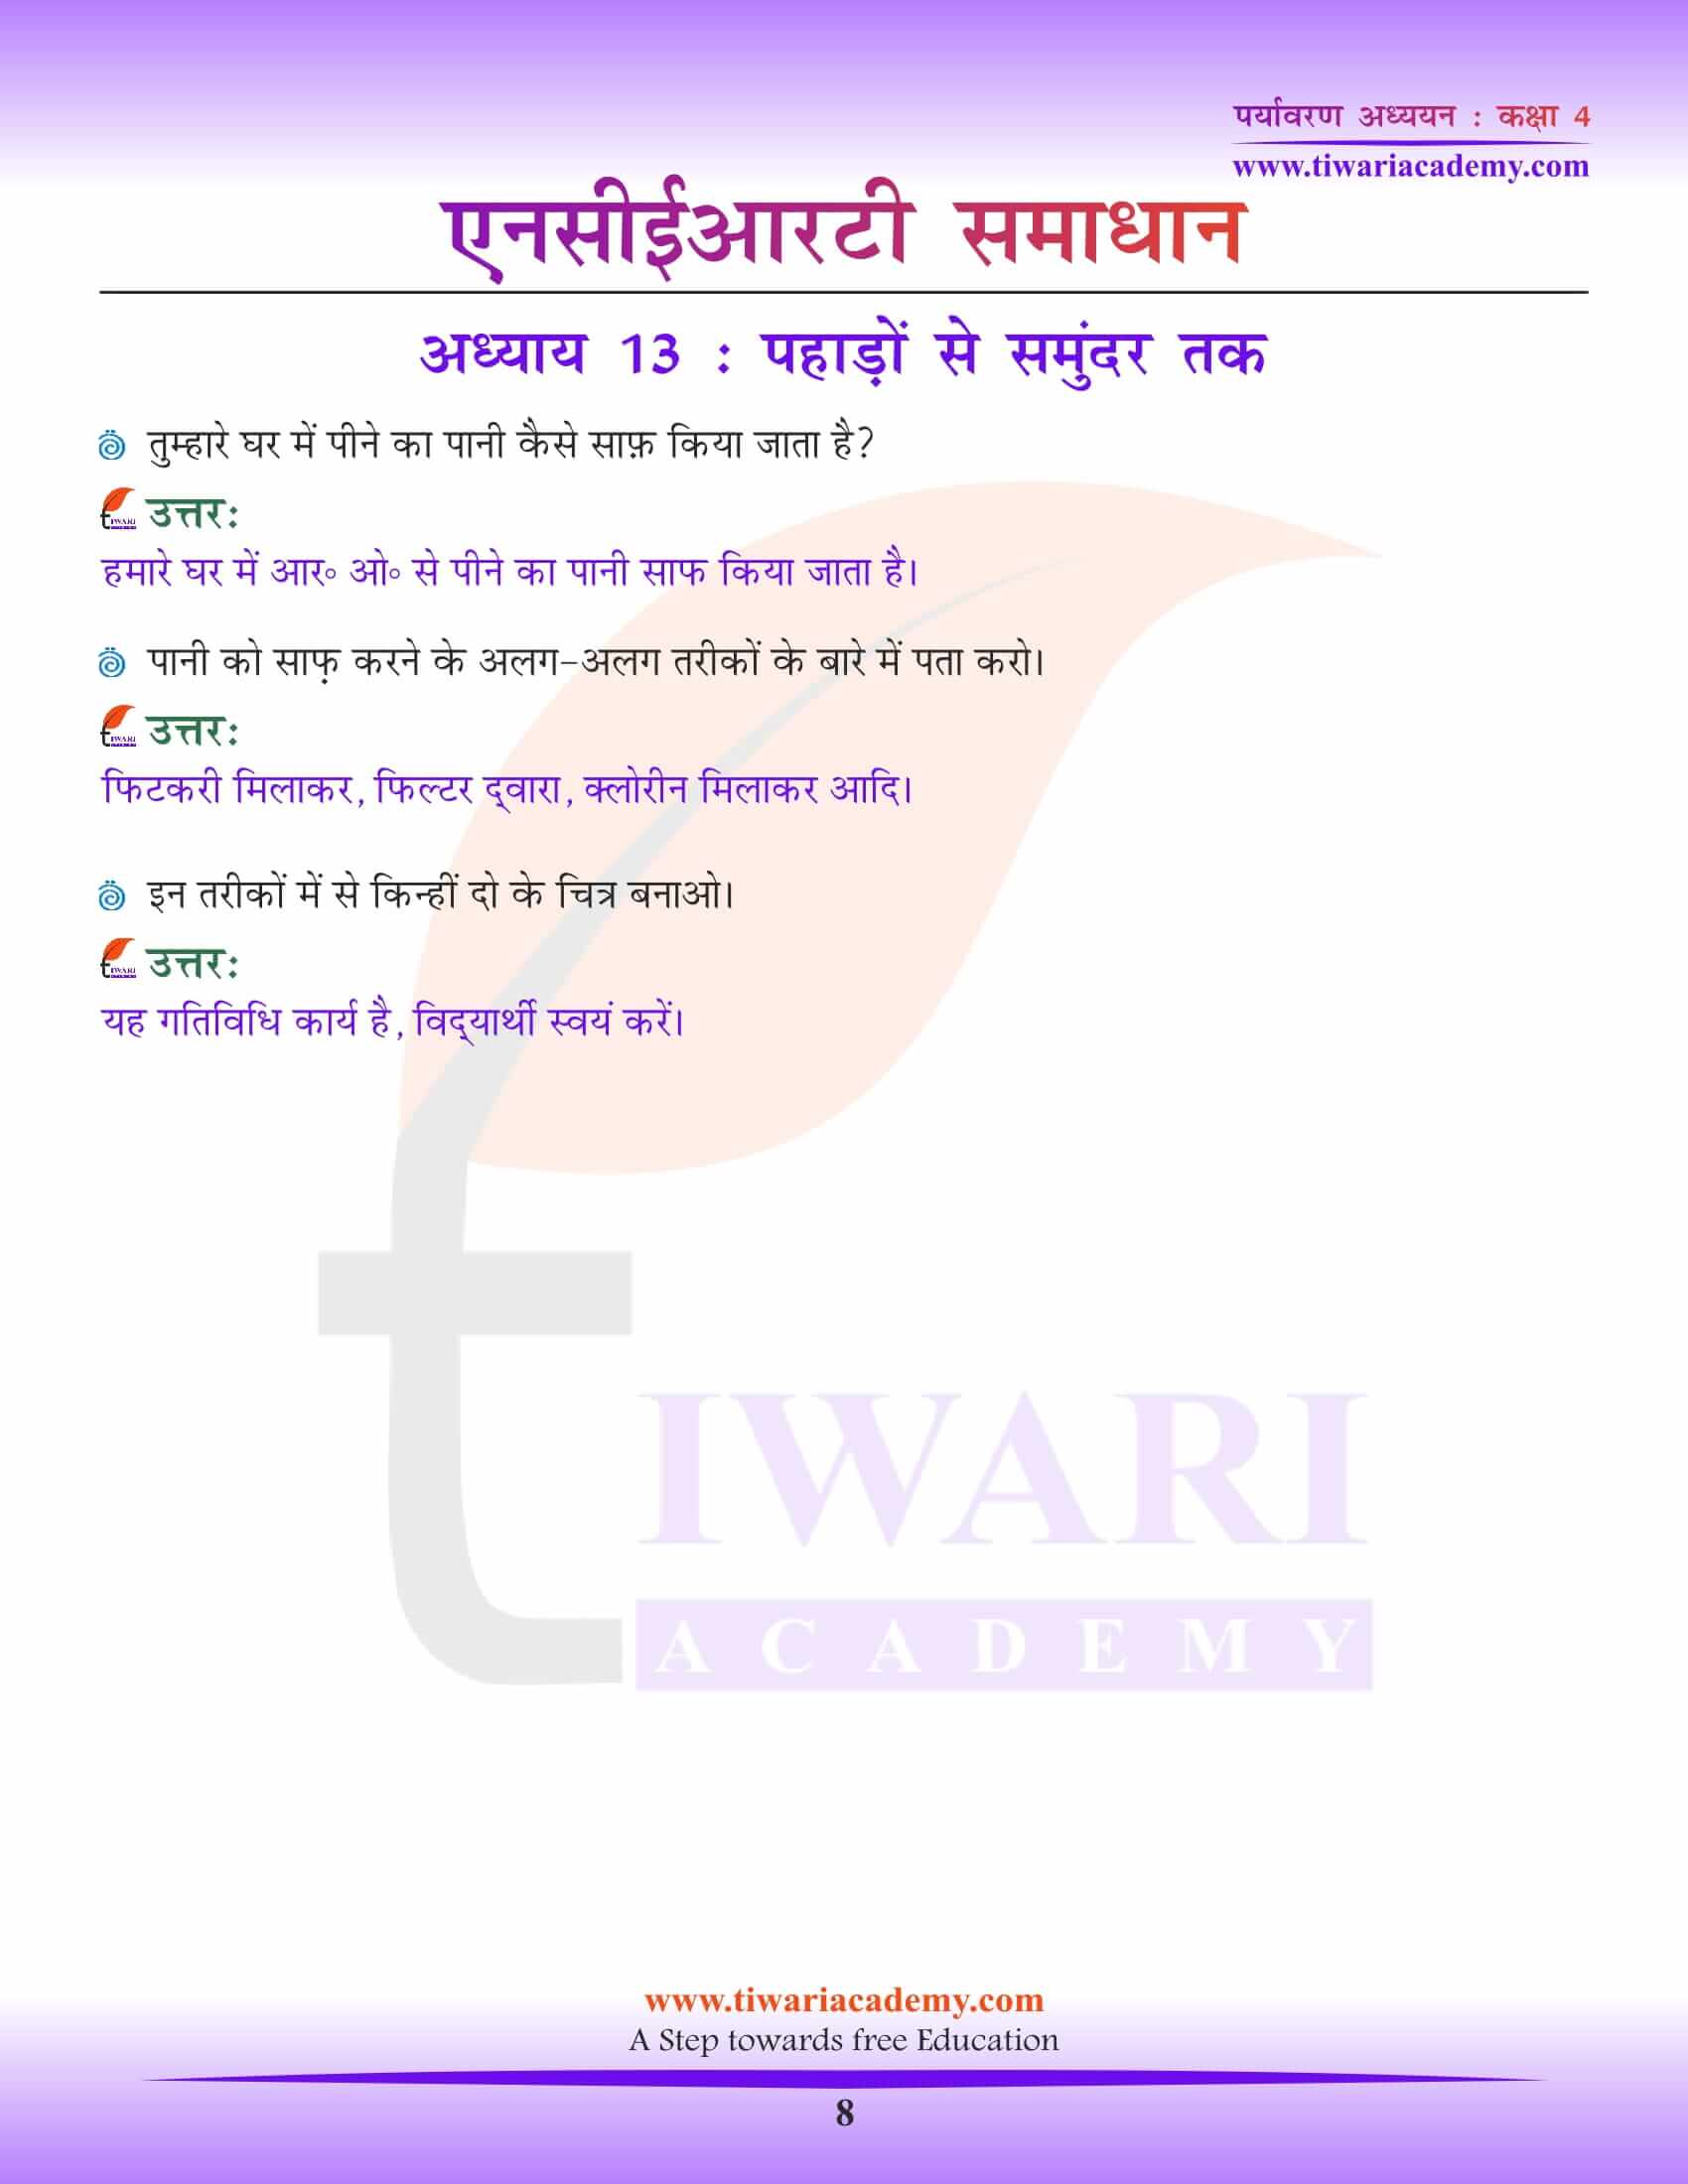 कक्षा 4 ईवीएस अध्याय 13 हिंदी मीडियम में समाधान